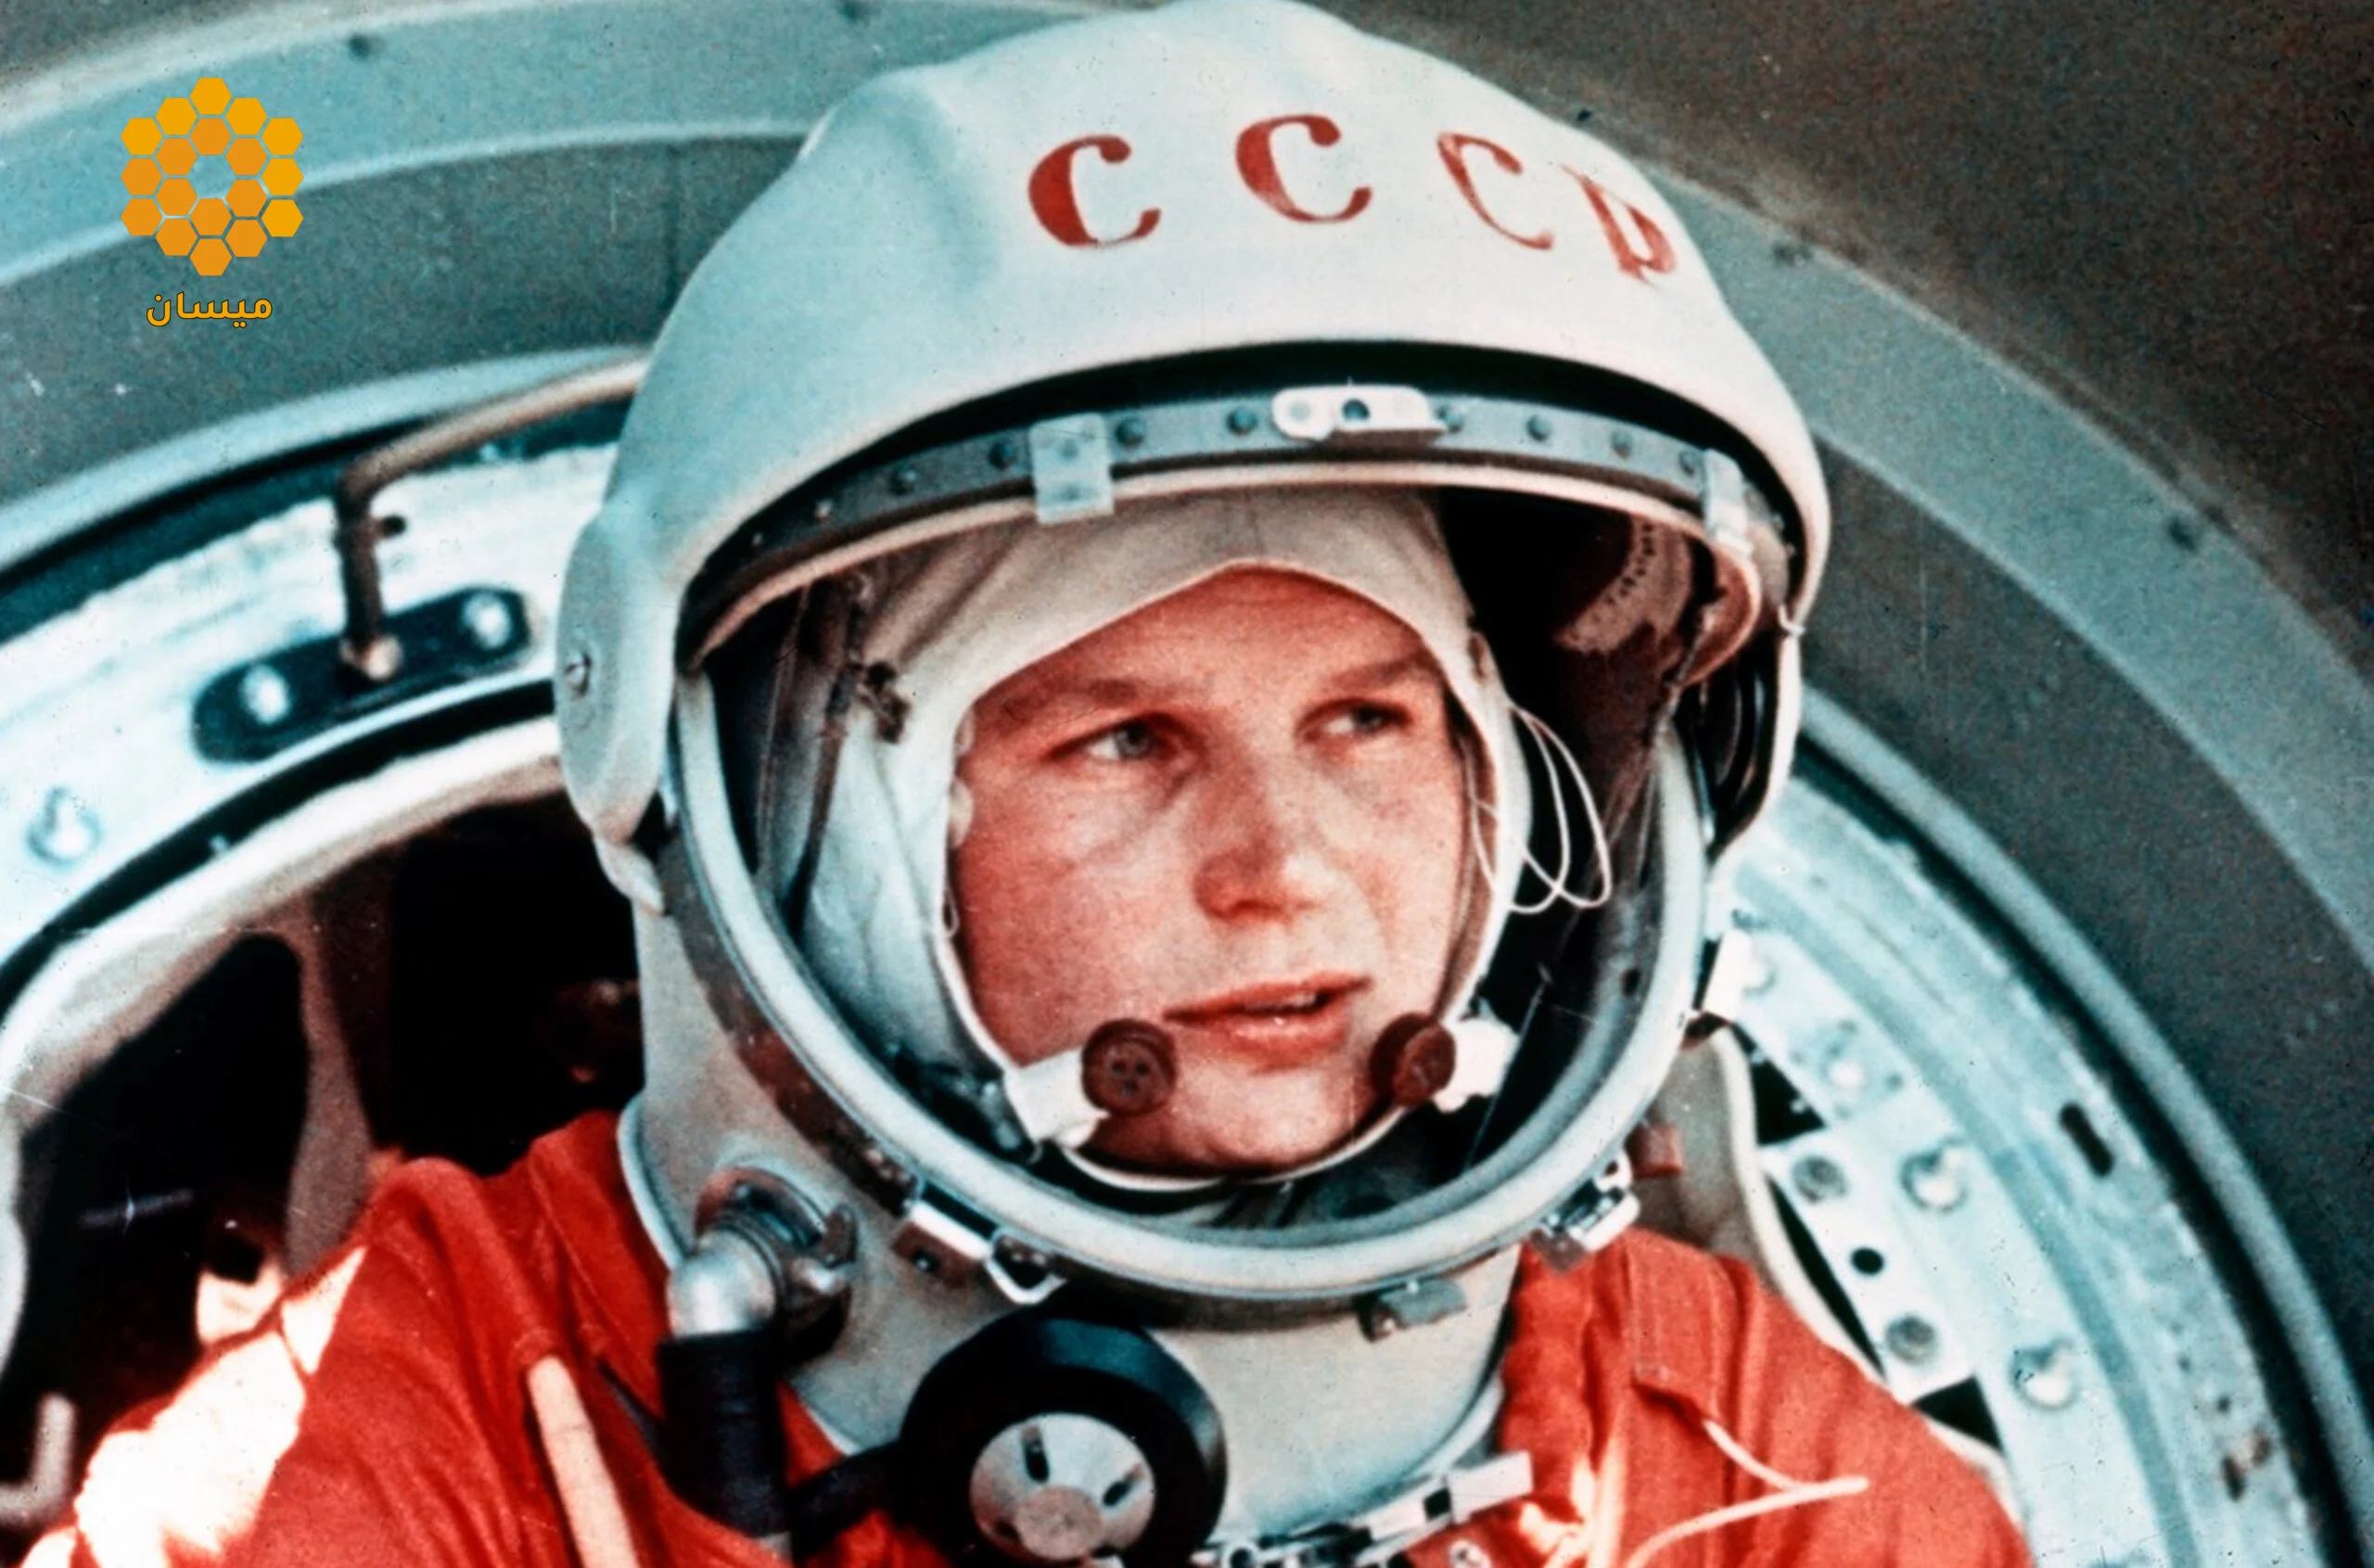 فالنتينا تريشكوفا  اول رائدة فضاء في العالم